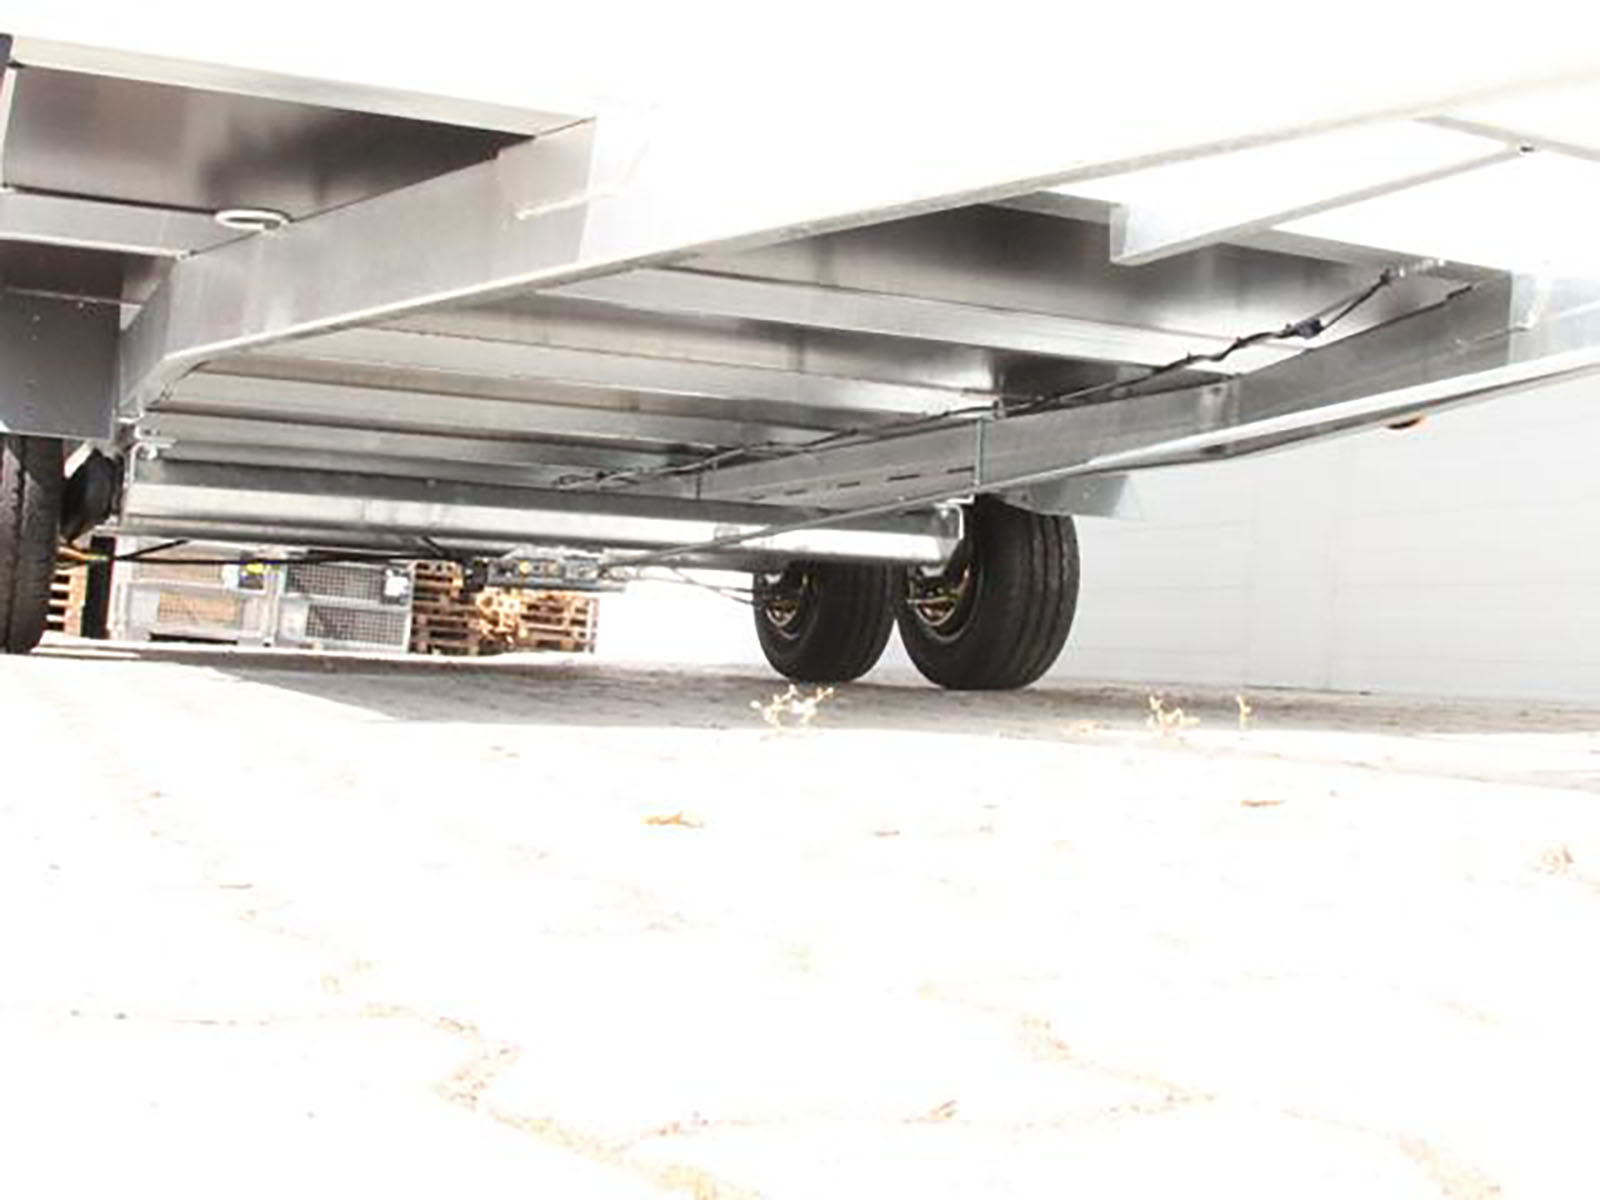 Gebraucht Sonstige Koffer Anhaenger Unsinn Kofferanhaenger UK 204x426cm Hoehe 210cm 3 0t_Ko0401SoUn_8xE0lPqr5M4319